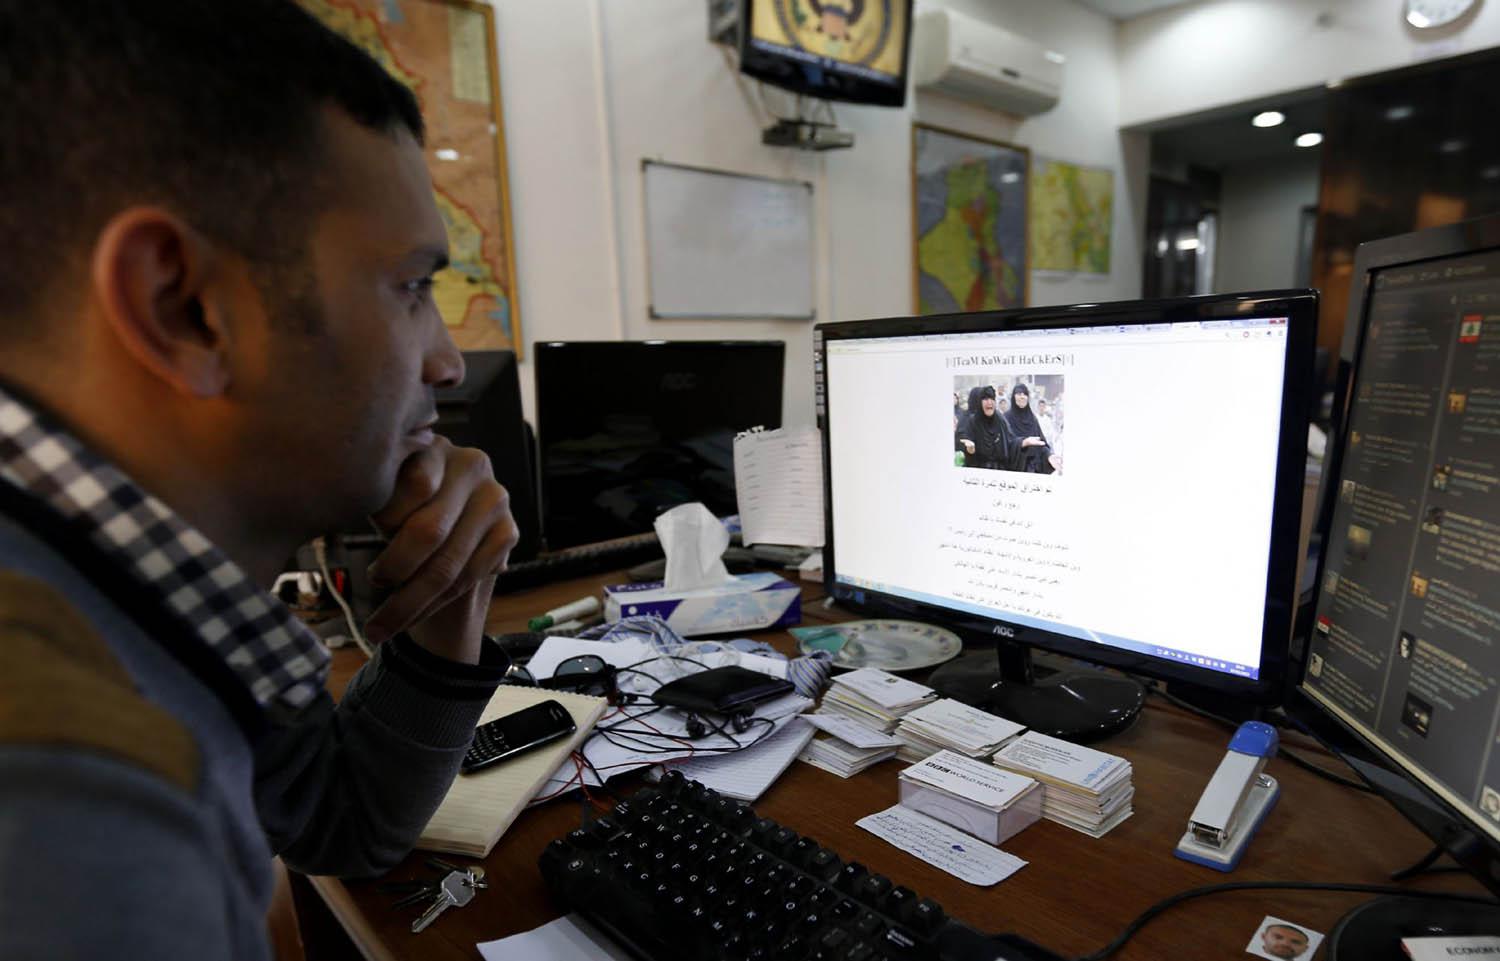 عراقي ينظر إلى موقع الكتروني تمت قرصنته